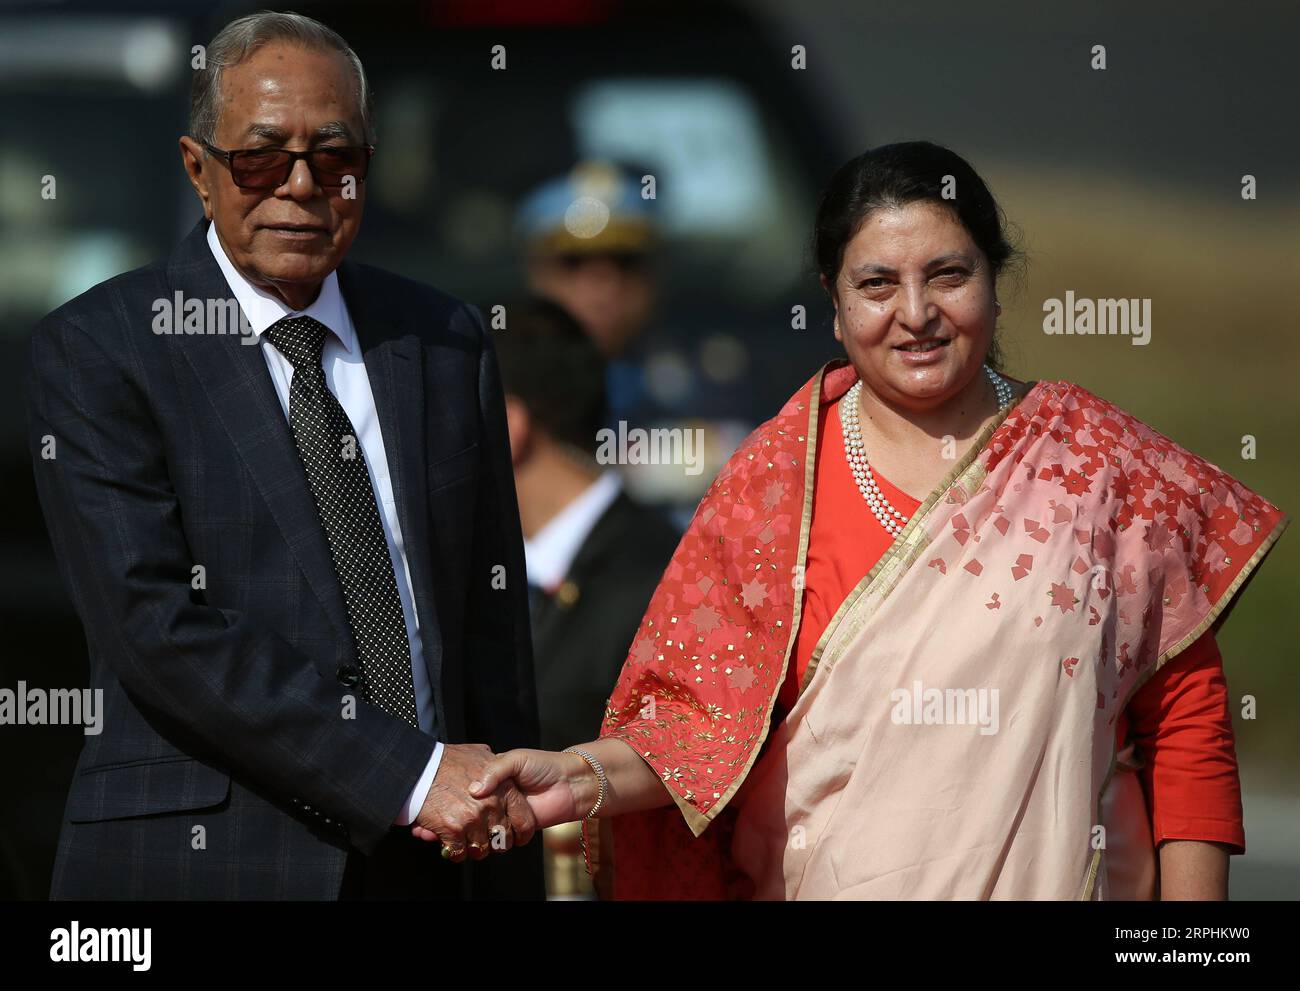 191112 -- KATMANDOU, le 12 novembre 2019 -- le président du Bangladesh M. Abdul Hamid L serre la main du président népalais Bidhya Devi Bhandari à l'aéroport international Tribhuvan de Katmandou, capitale du Népal, le 12 novembre 2019. Le président du Bangladesh, M. Abdul Hamid, est arrivé mardi à Katmandou pour une visite officielle de bonne volonté de quatre jours. Str/Xinhua NÉPAL-KATMANDOU-PRÉSIDENT DU BANGLADESH- VISITE sunilxsharma PUBLICATIONxNOTxINxCHN Banque D'Images